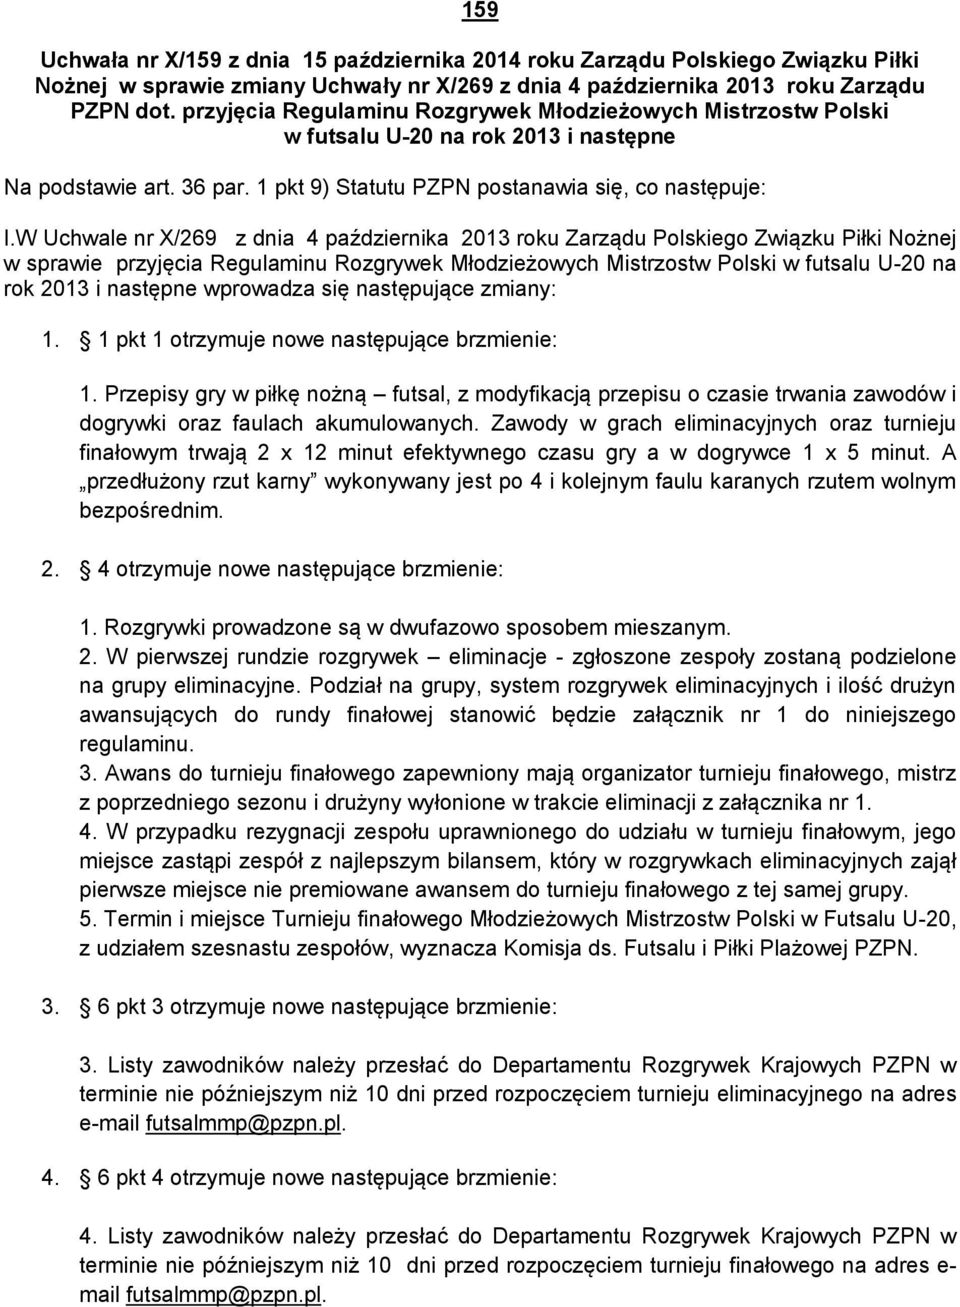 W Uchwale nr X/269 z dnia 4 października 2013 roku Zarządu Polskiego Związku Piłki Nożnej w sprawie przyjęcia Regulaminu Rozgrywek Młodzieżowych Mistrzostw Polski w futsalu U-20 na rok 2013 i